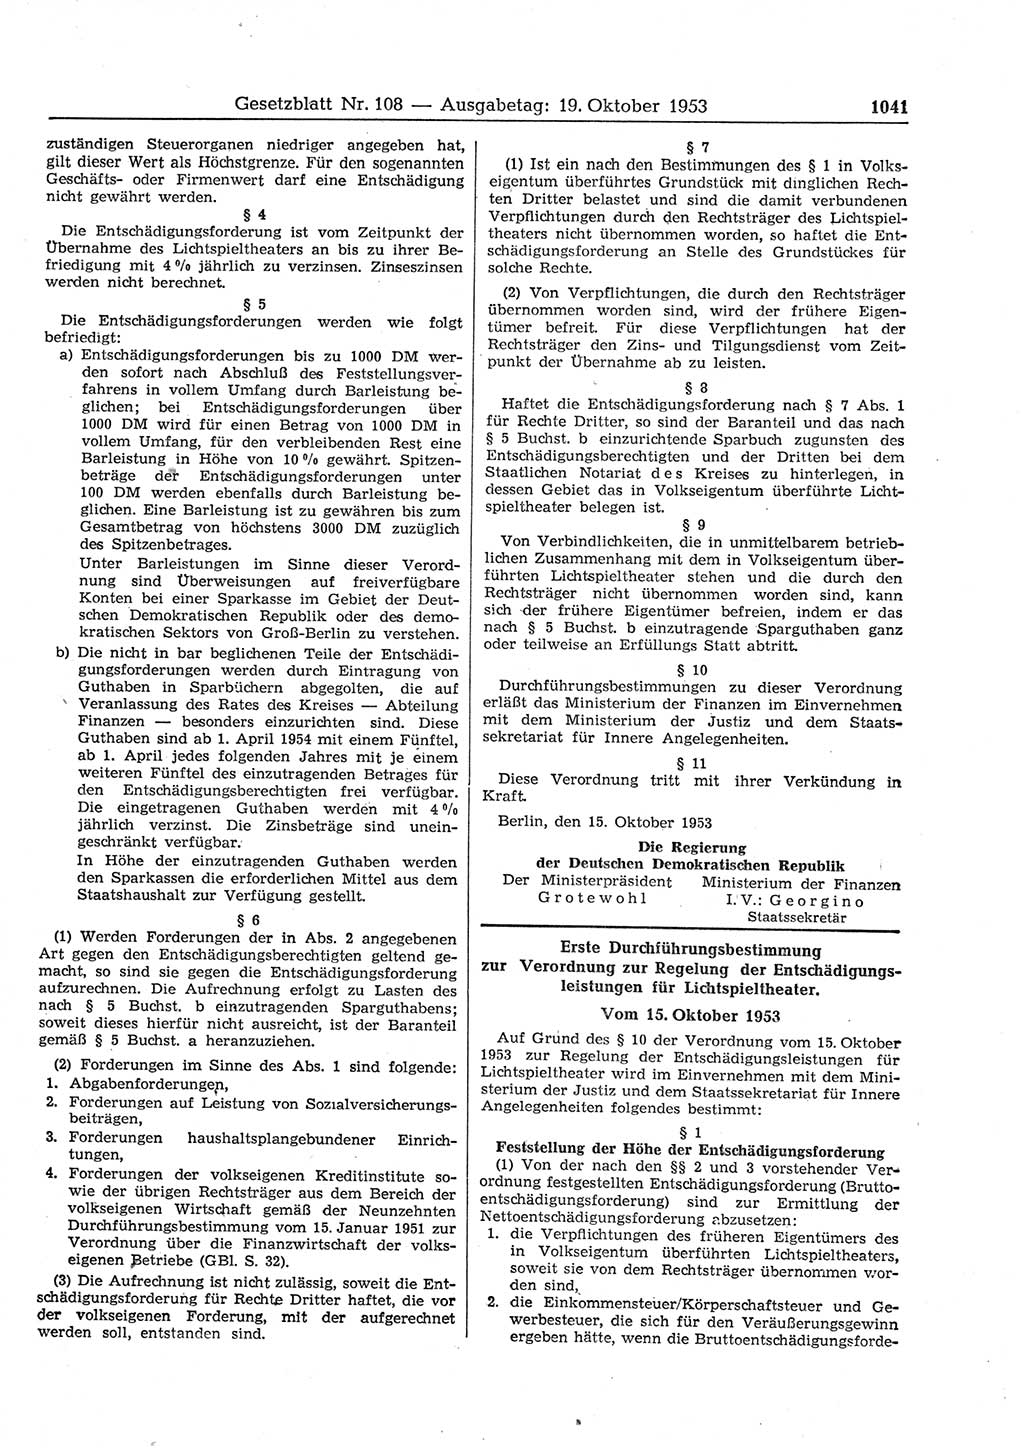 Gesetzblatt (GBl.) der Deutschen Demokratischen Republik (DDR) 1953, Seite 1041 (GBl. DDR 1953, S. 1041)